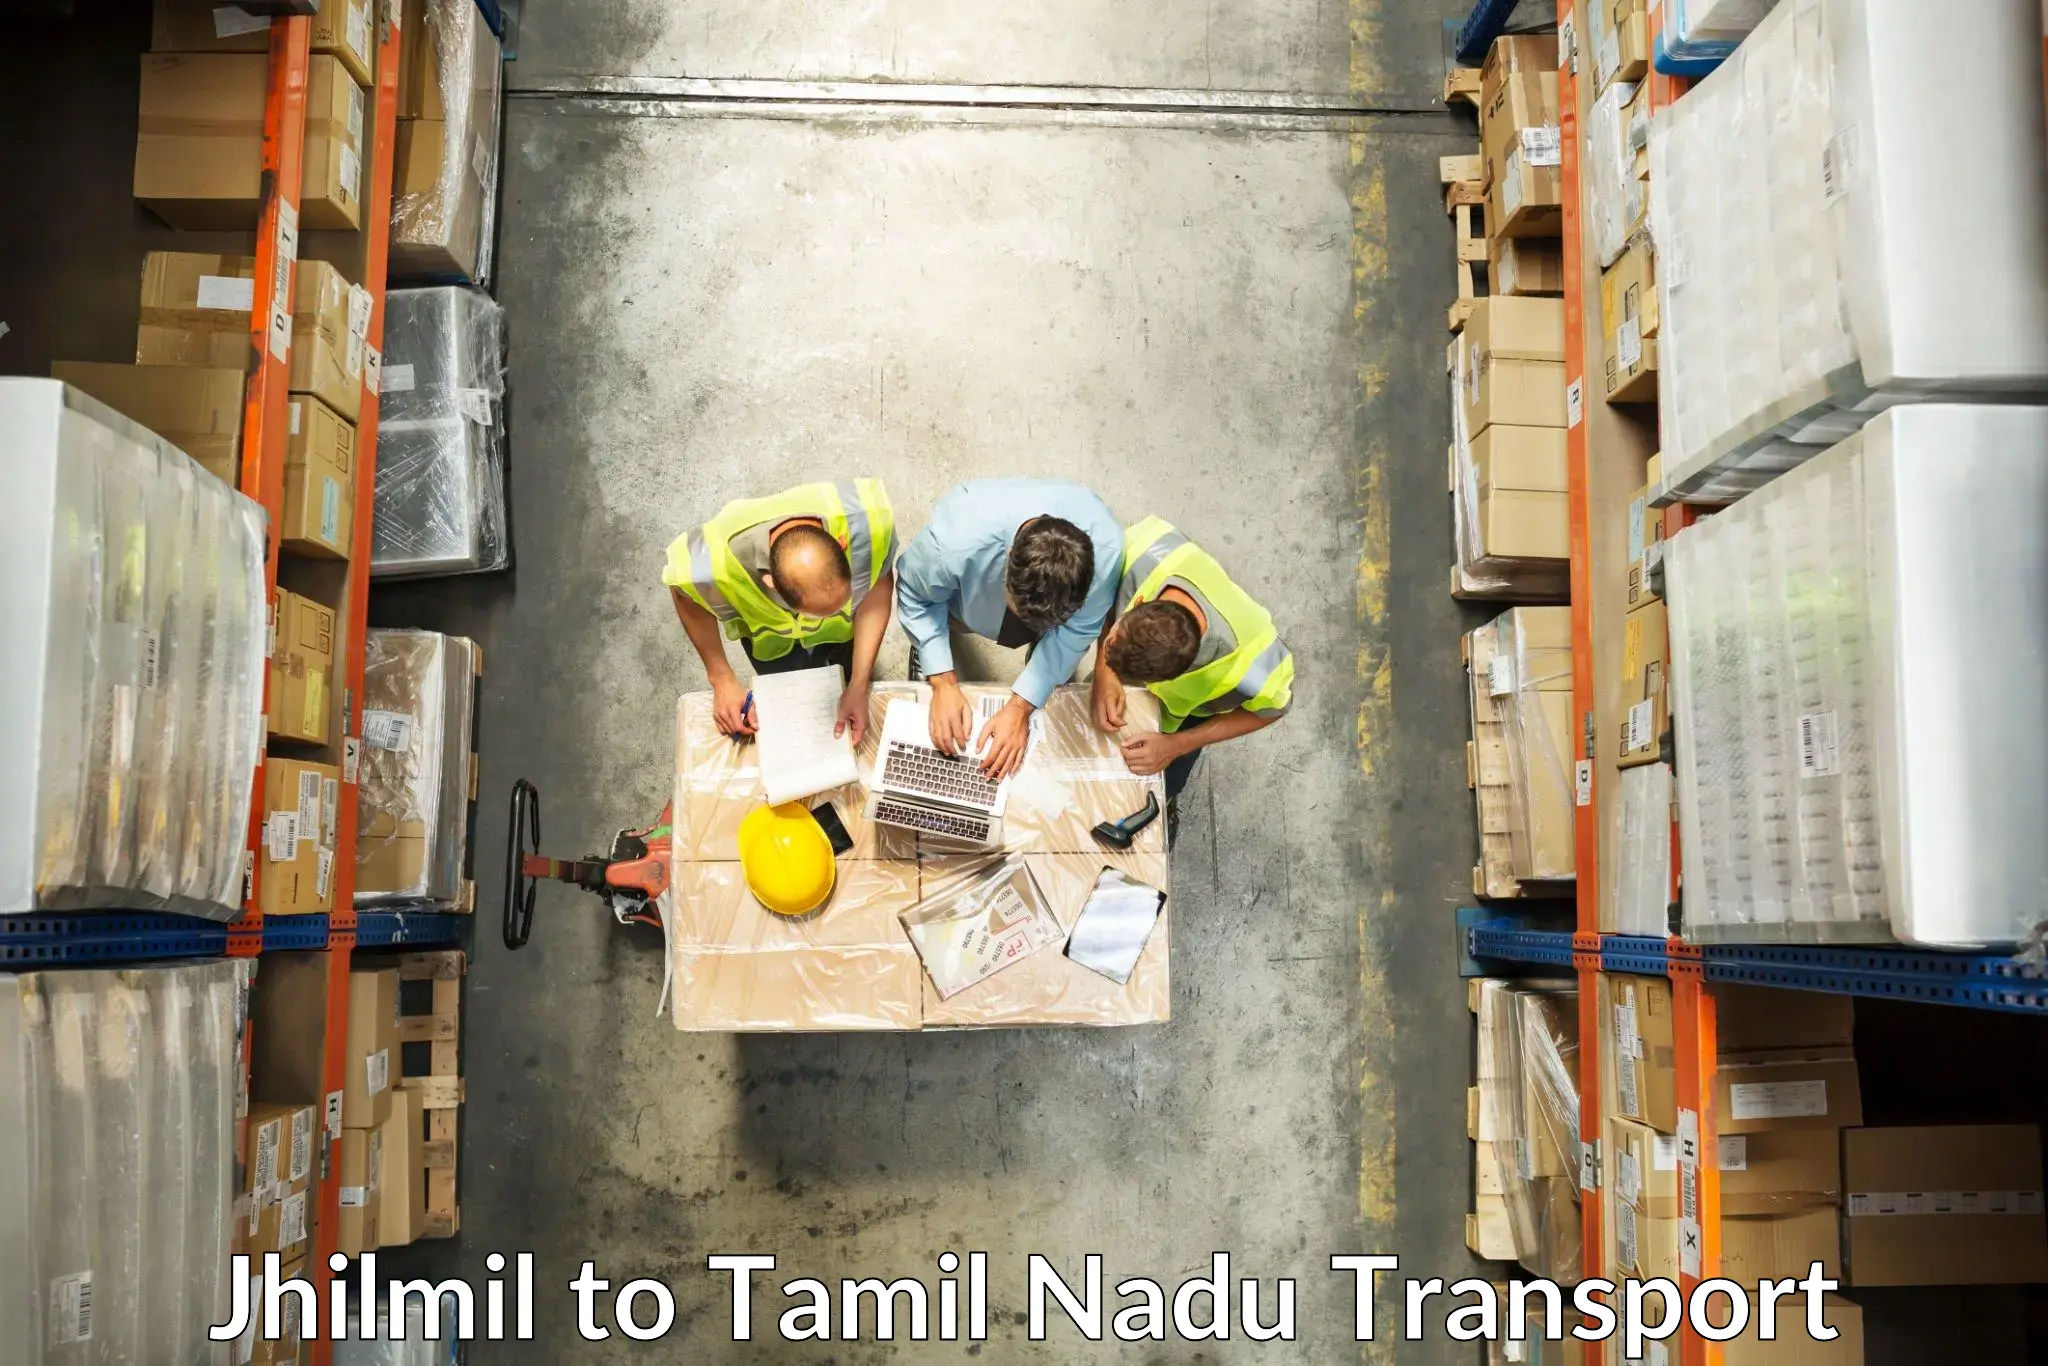 Nearest transport service Jhilmil to Tirukalukundram